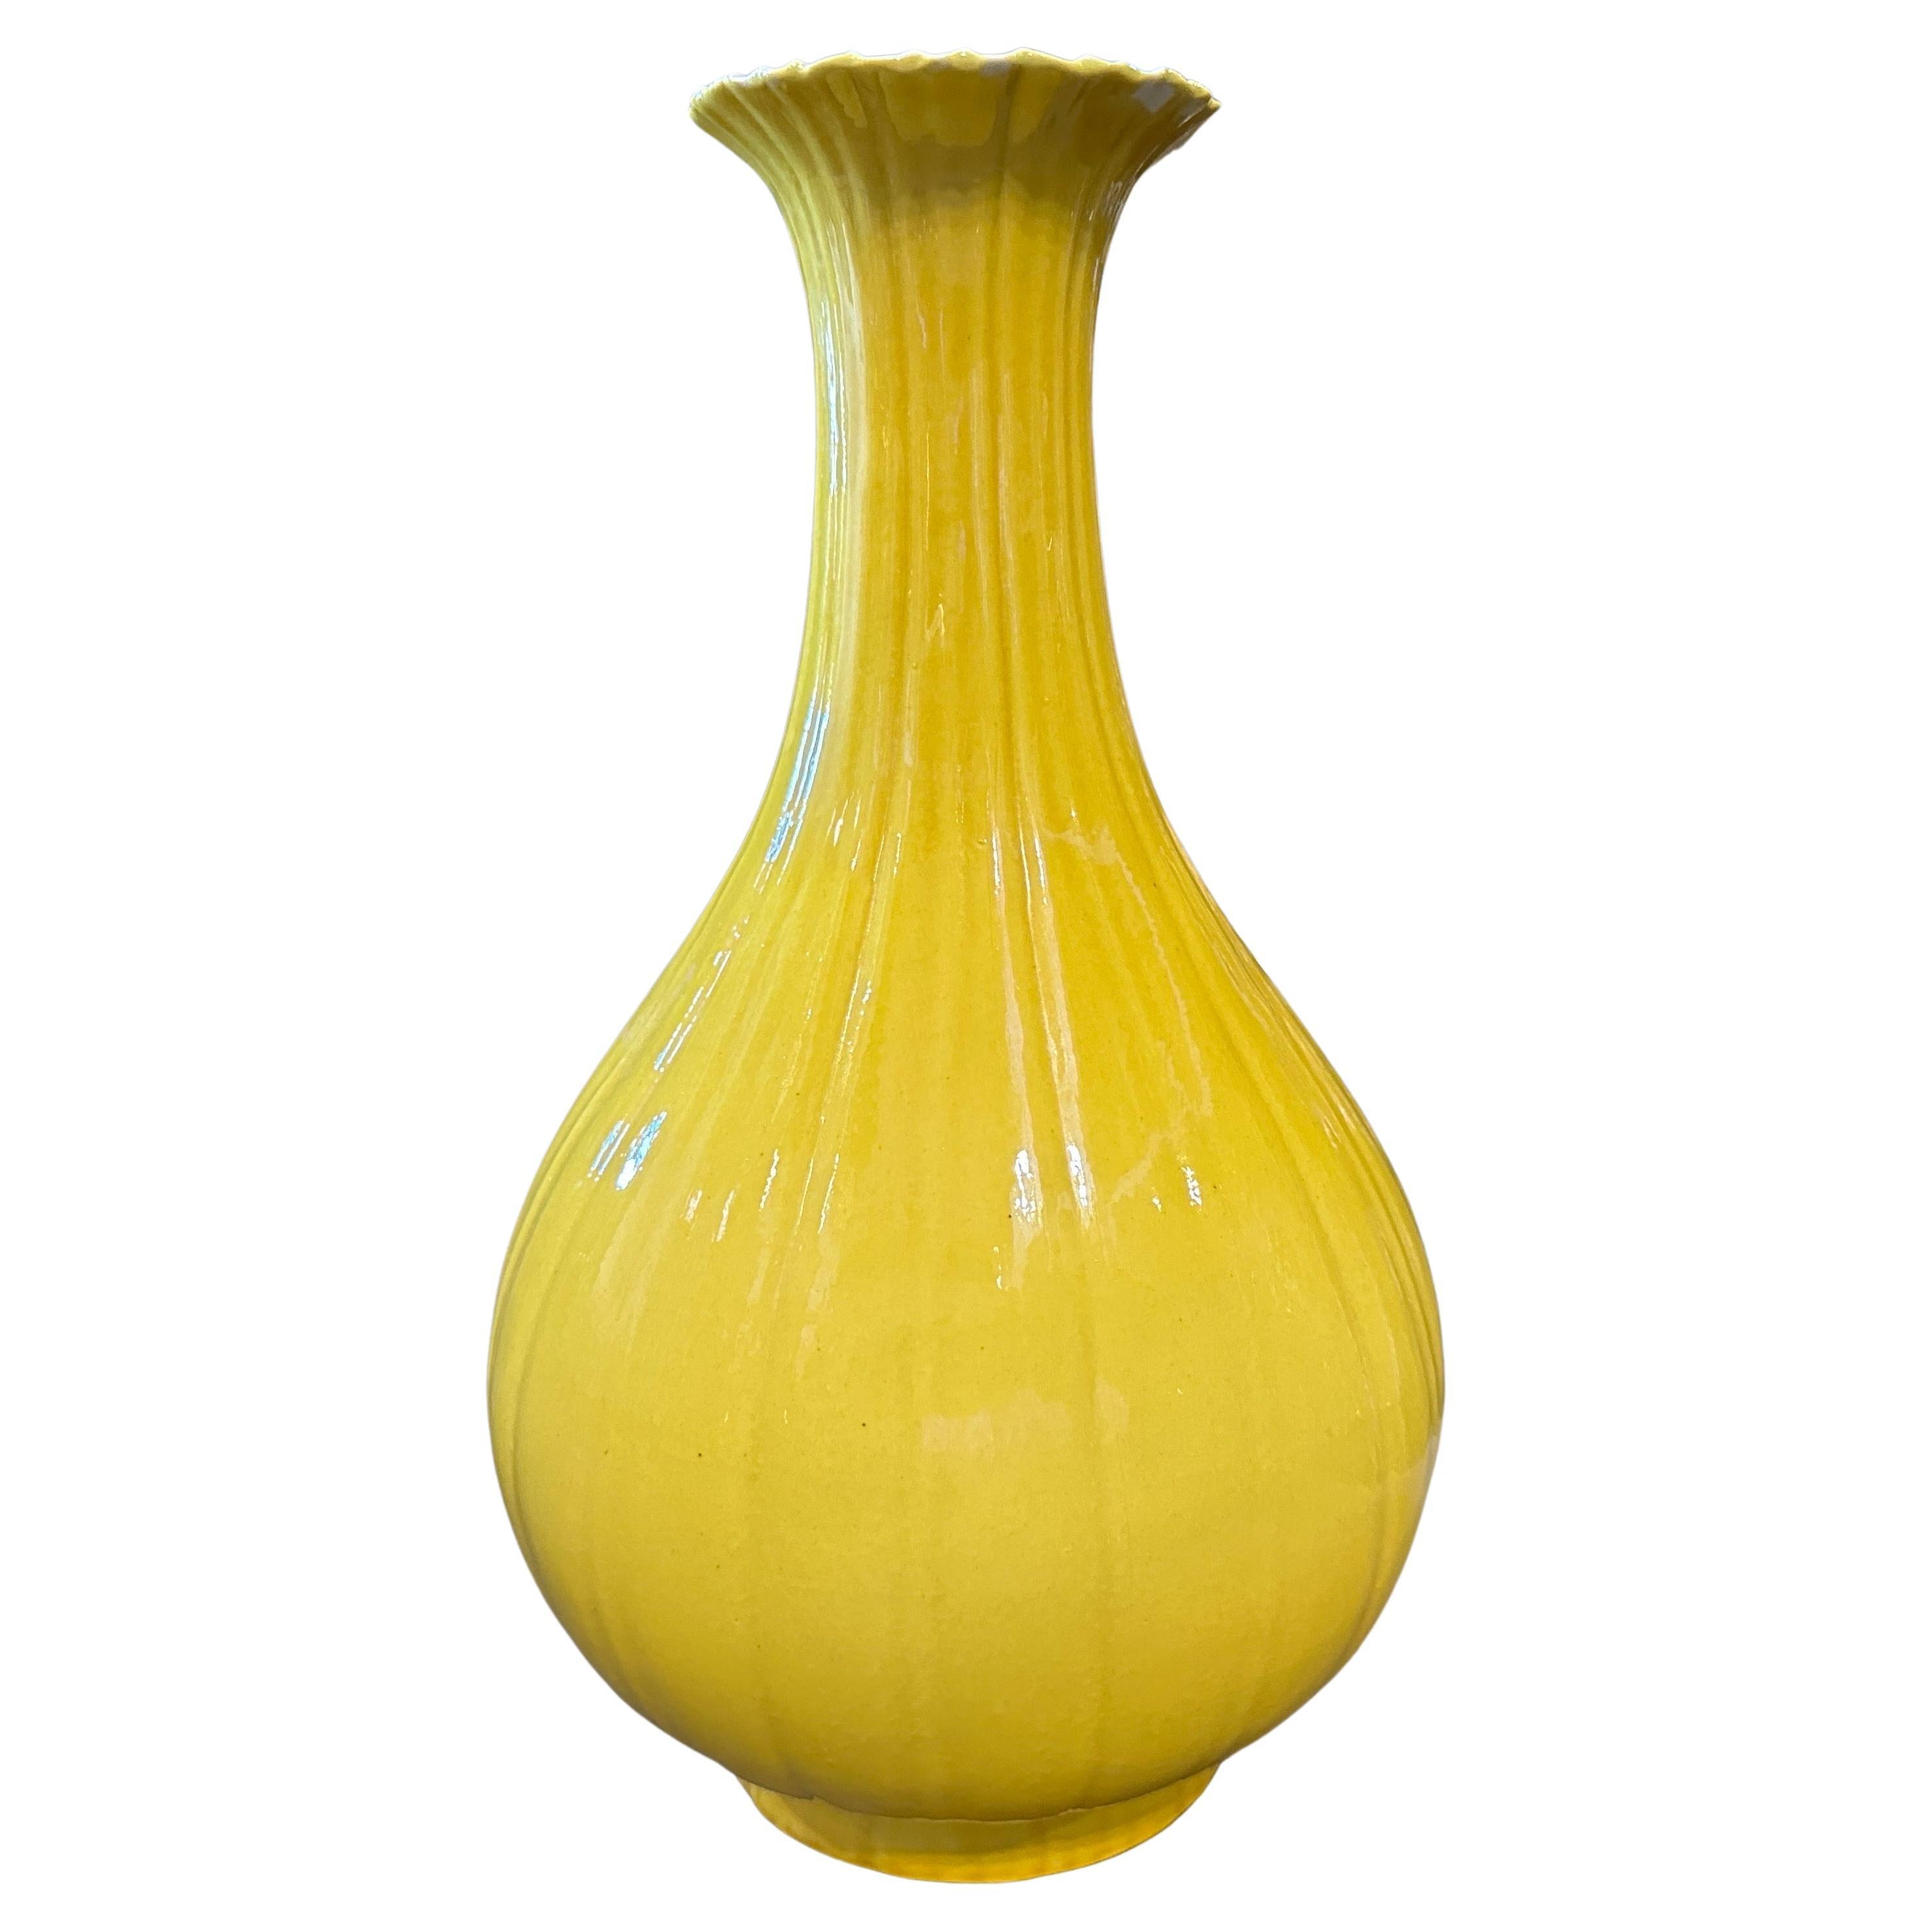 Early 20th Century Yellow Glazed Porcelain Chinese Vase